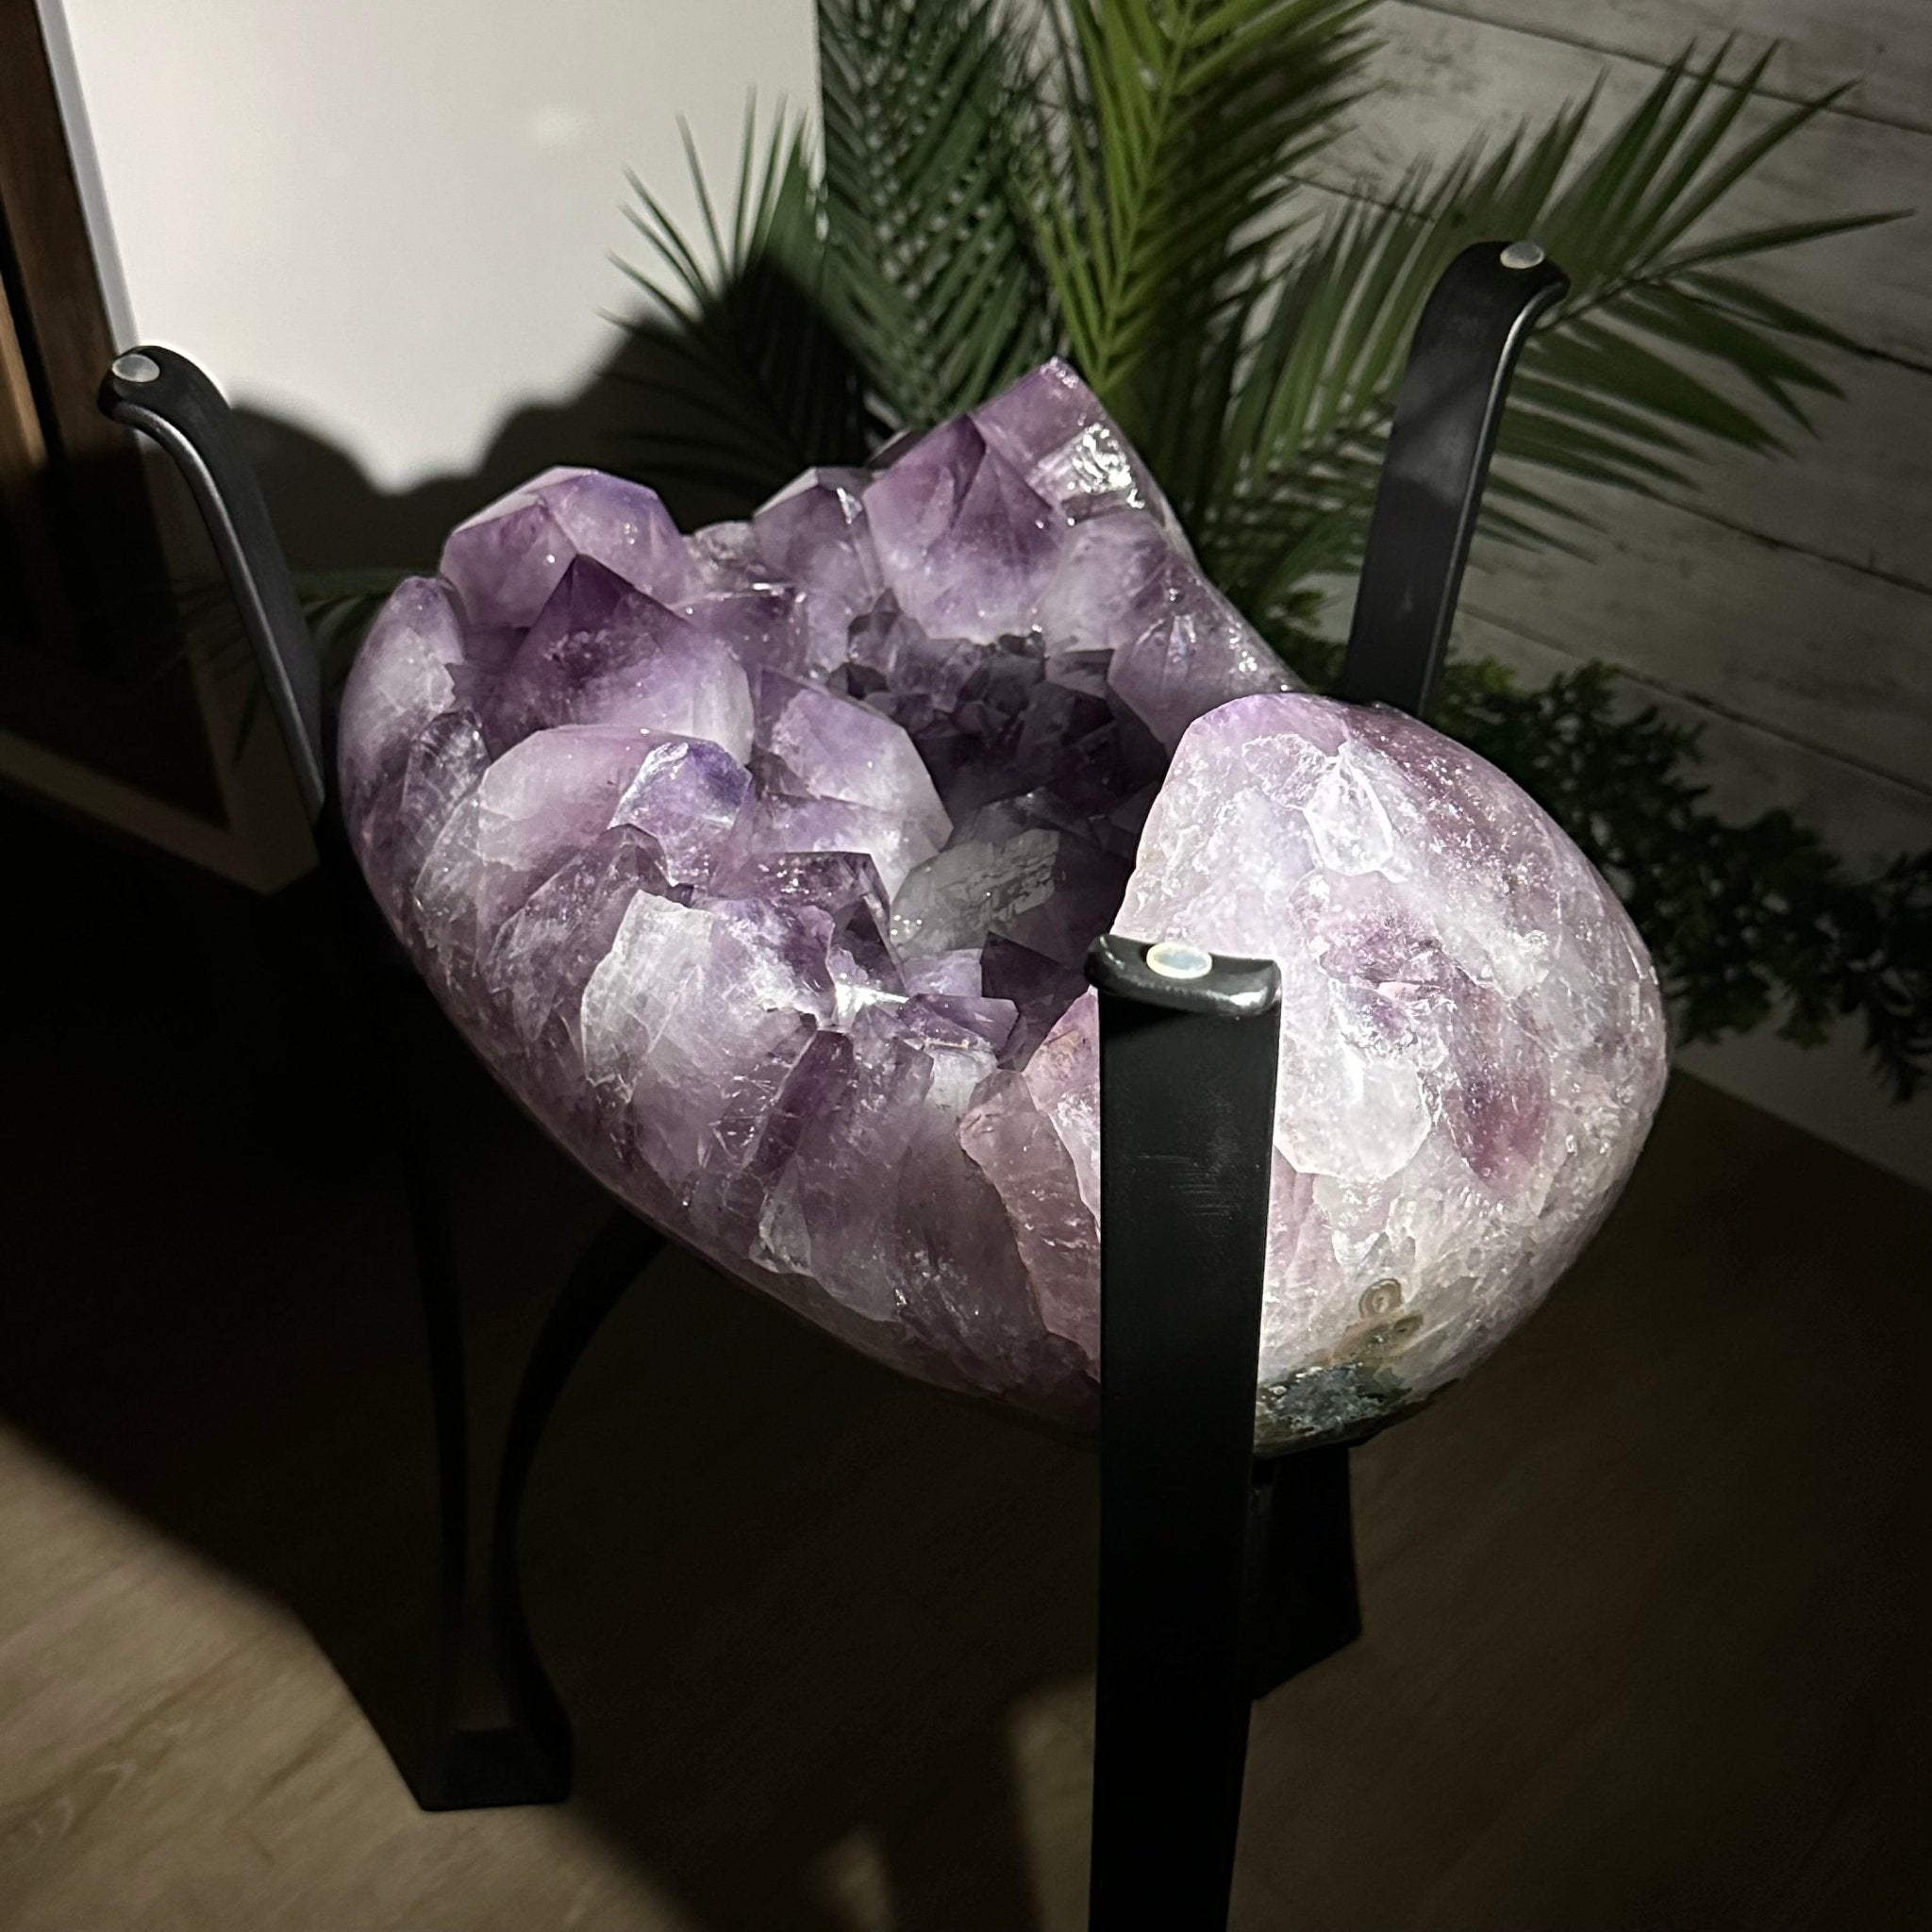 Brazilian Amethyst Geode Side Table, 57 lbs, 21.7" Tall #1384-0038 - Brazil GemsBrazil GemsBrazilian Amethyst Geode Side Table, 57 lbs, 21.7" Tall #1384-0038Tables: Side1384-0038